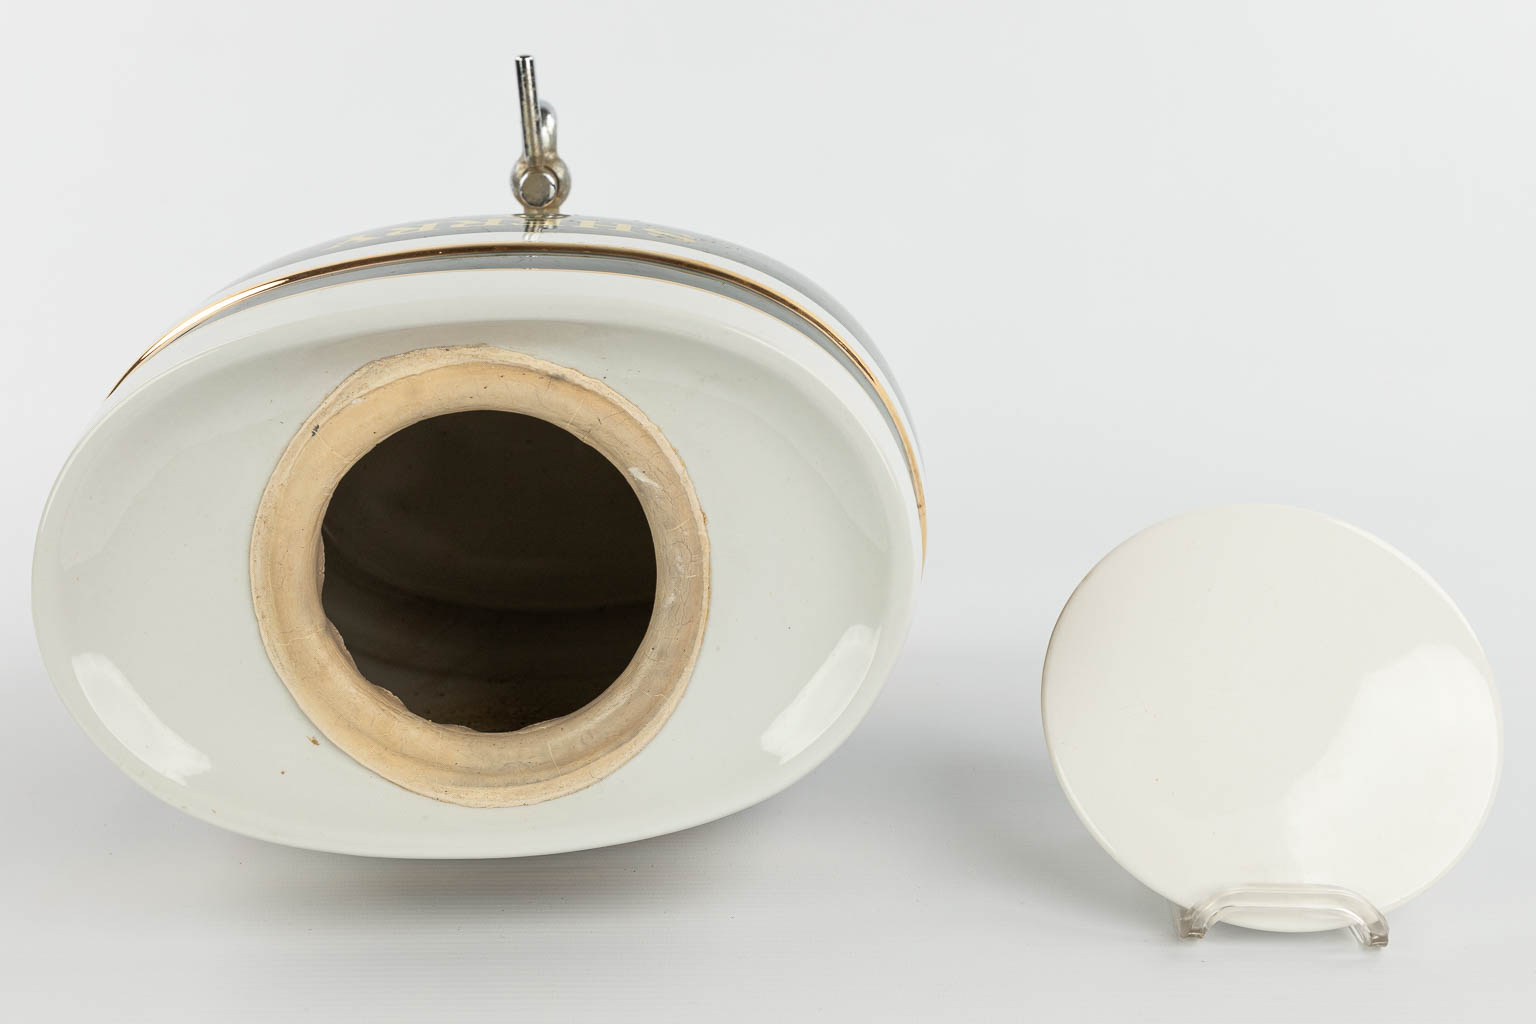 A barrel made of porcelain 